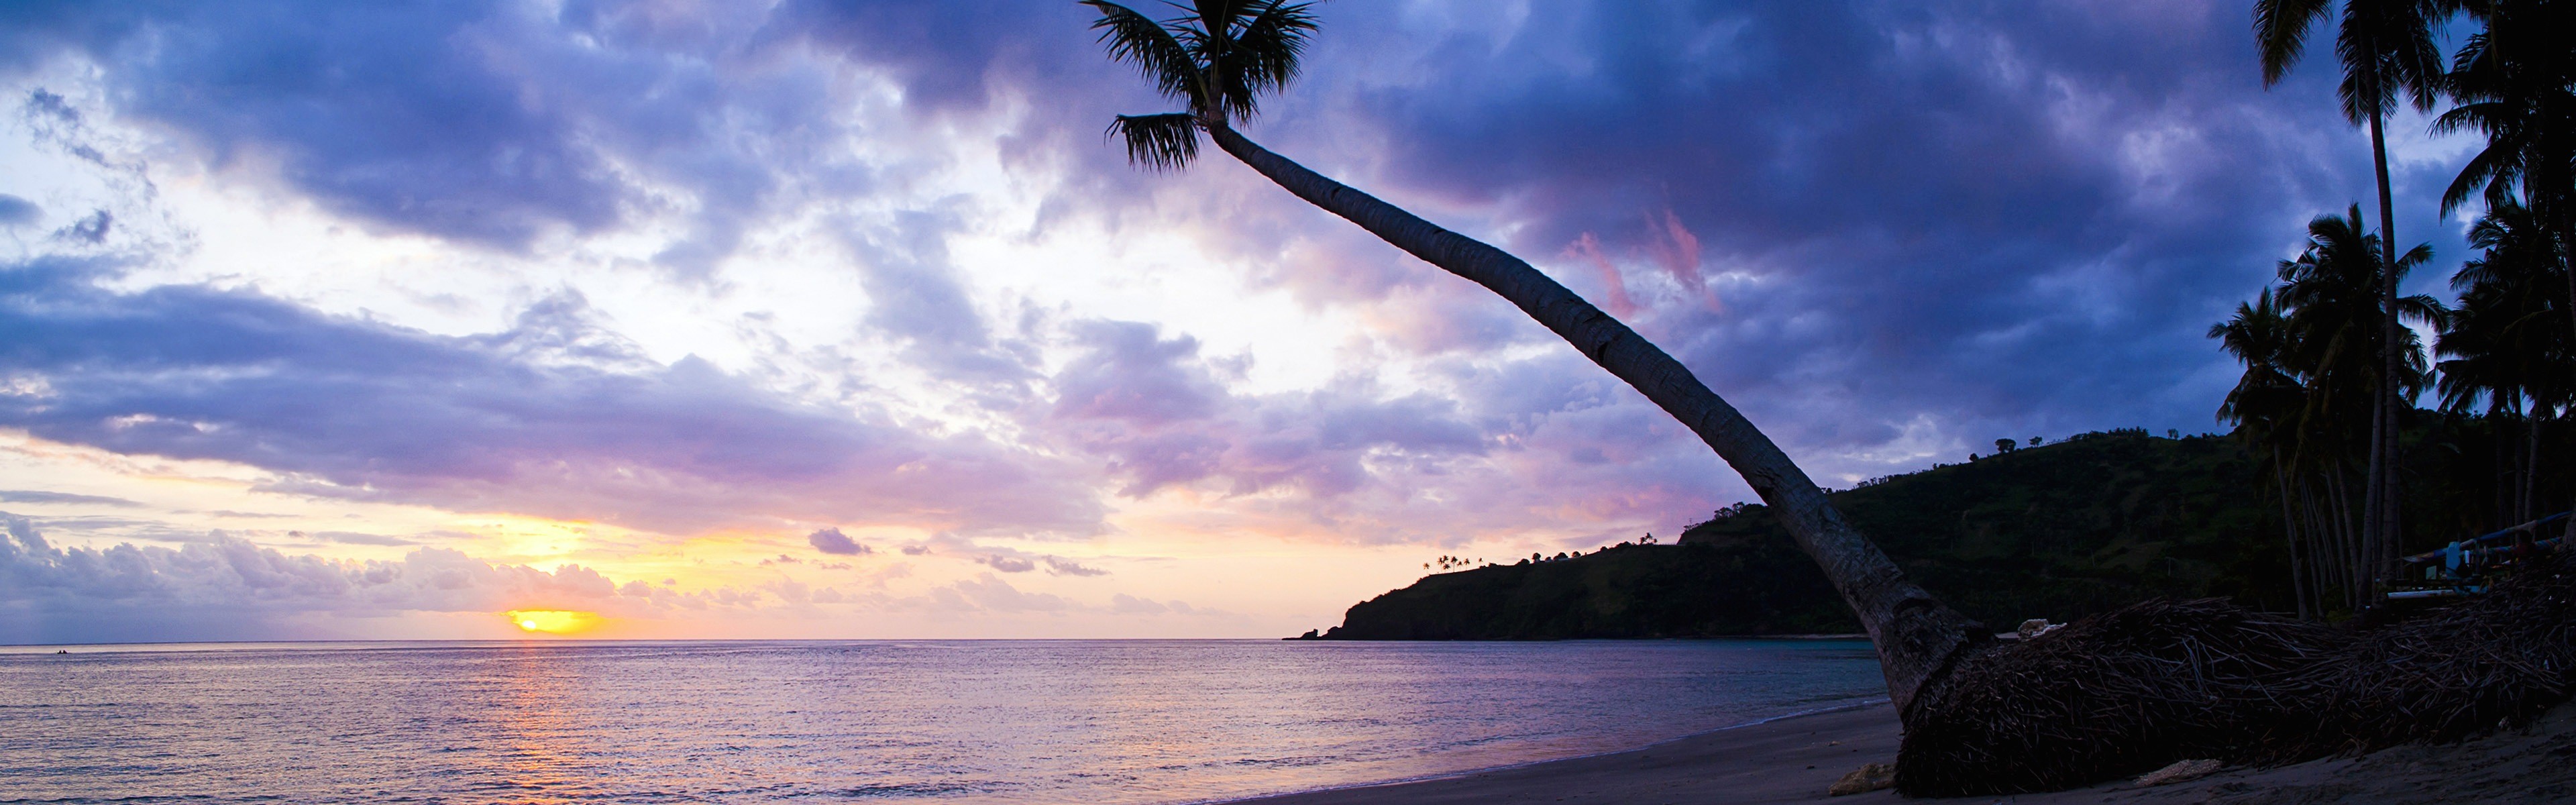 3840x1200, Beautiful Beach Sunset, Windows 8 Panoramic - 4k Panoramic Wallpaper Beach - HD Wallpaper 